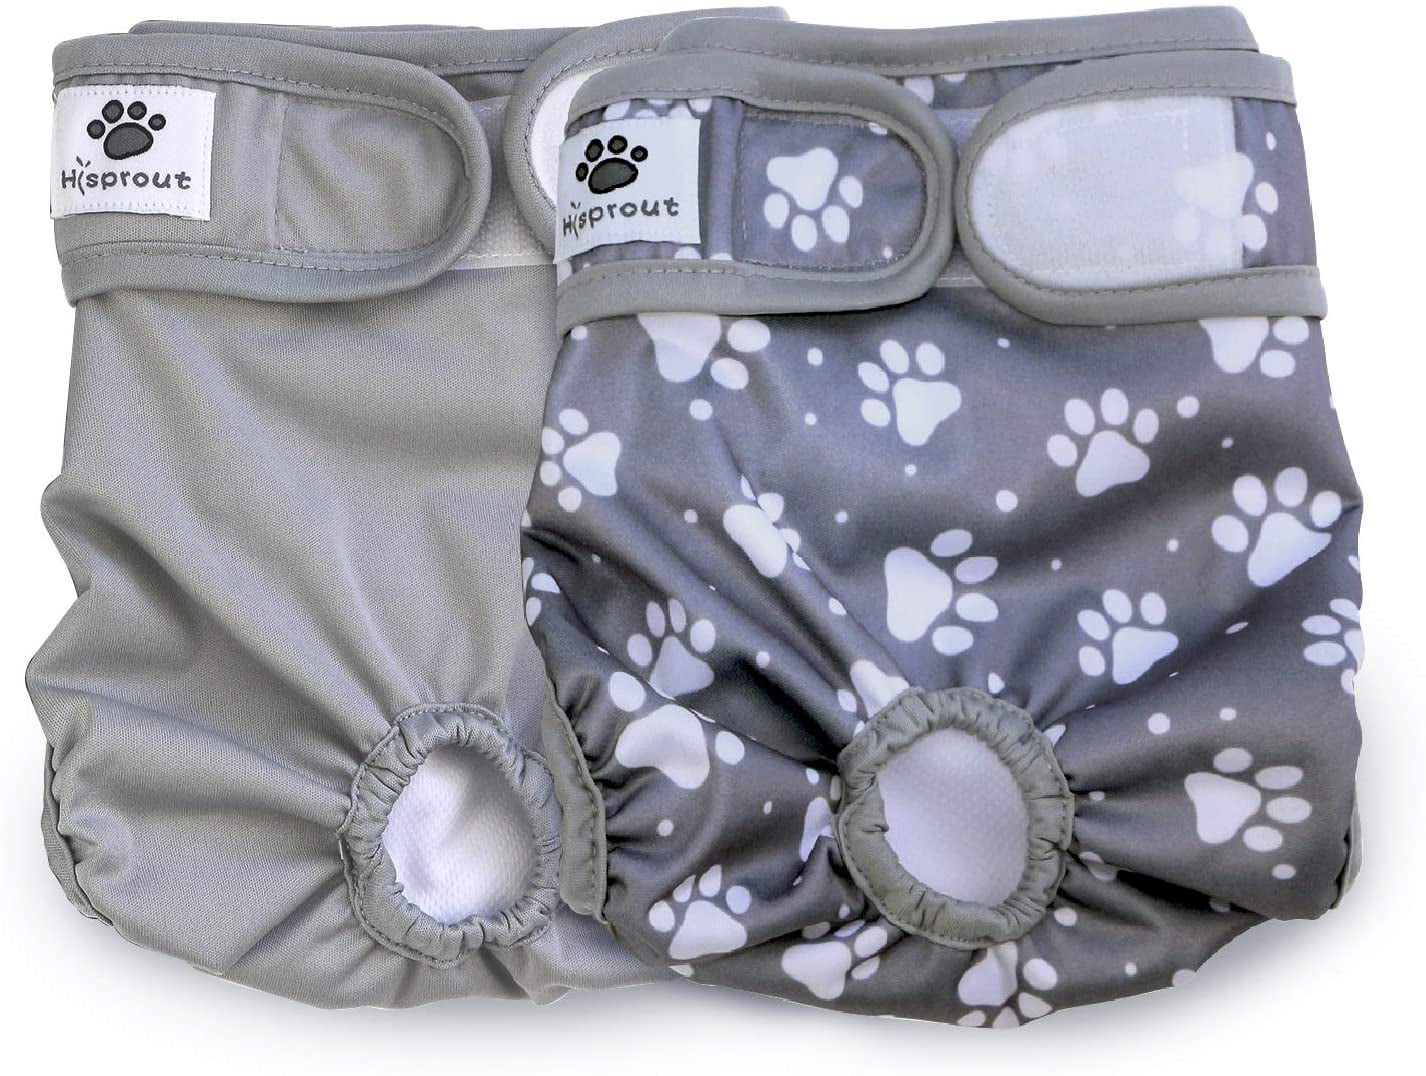 PEIUJIN Female Pet Dog Diaper Reusable Washable Durable Puppy Hygiene Diaper Doggie Diapers Pants Size M